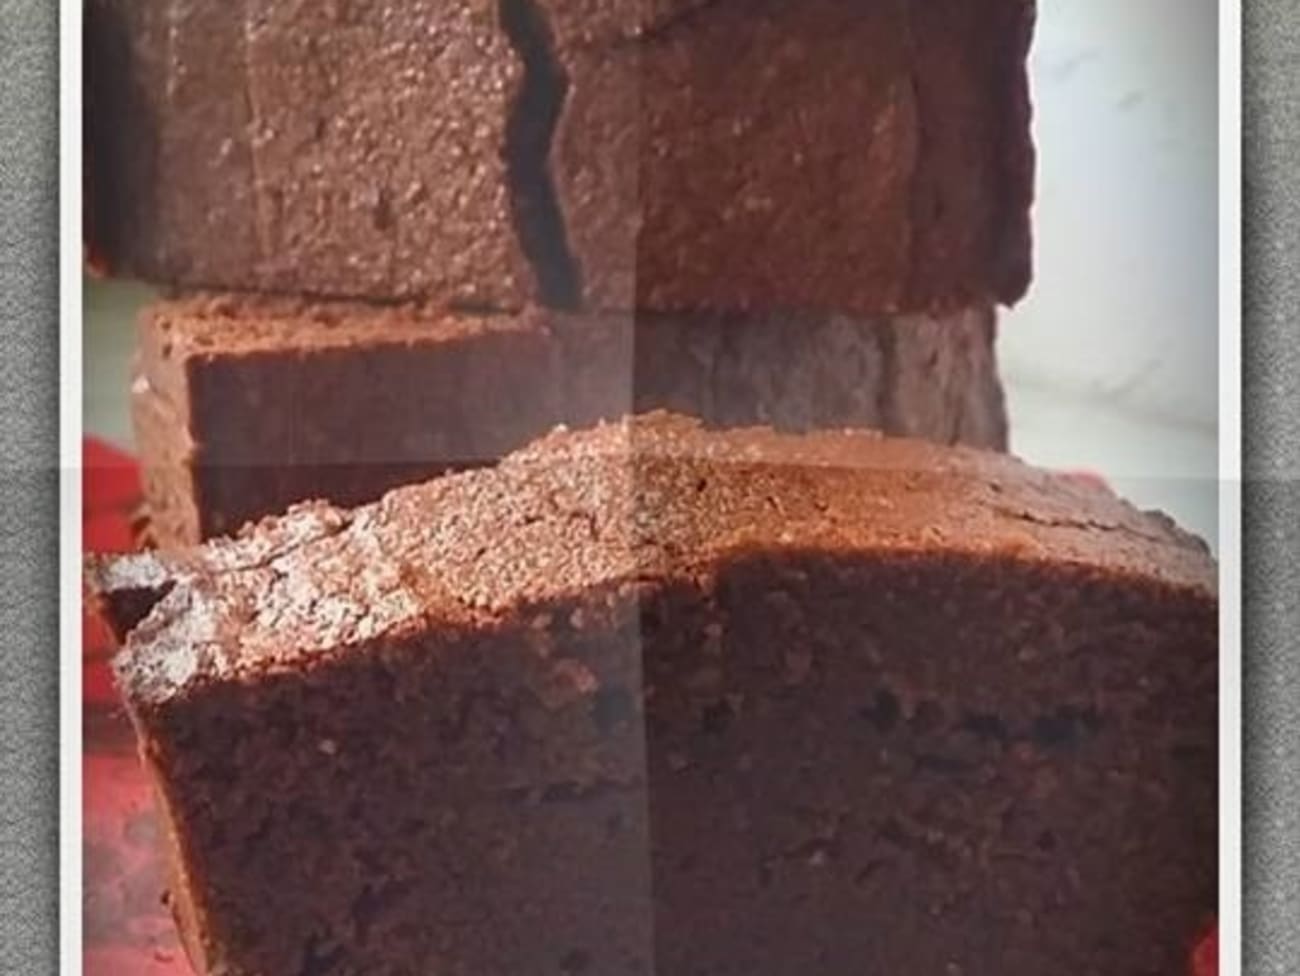 Gâteau au chocolat sans gluten et sans beurre - La Faim Des Délices